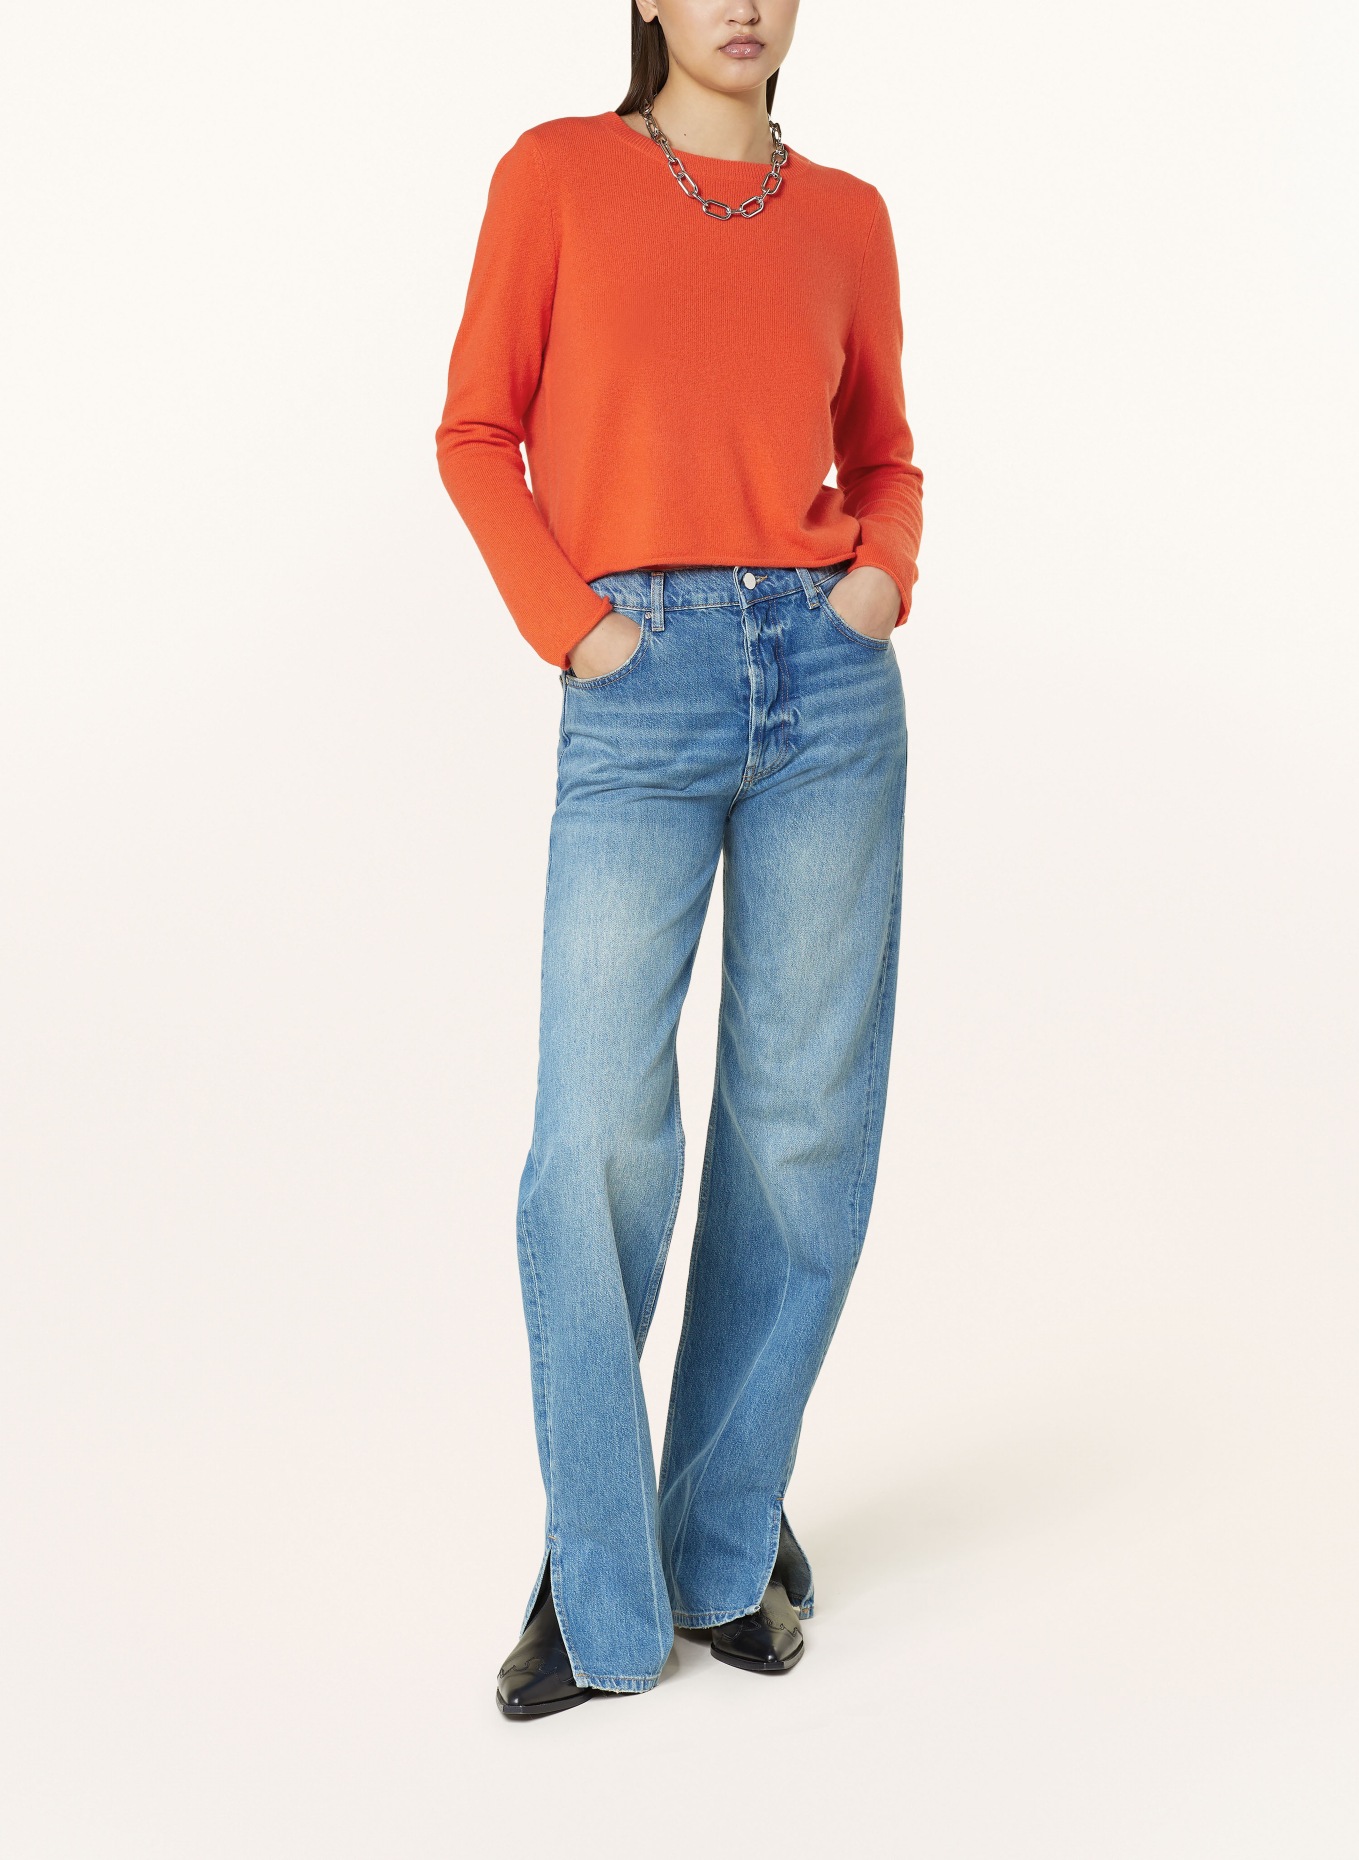 MRS & HUGS Cashmere-Pullover, Farbe: ORANGE (Bild 2)